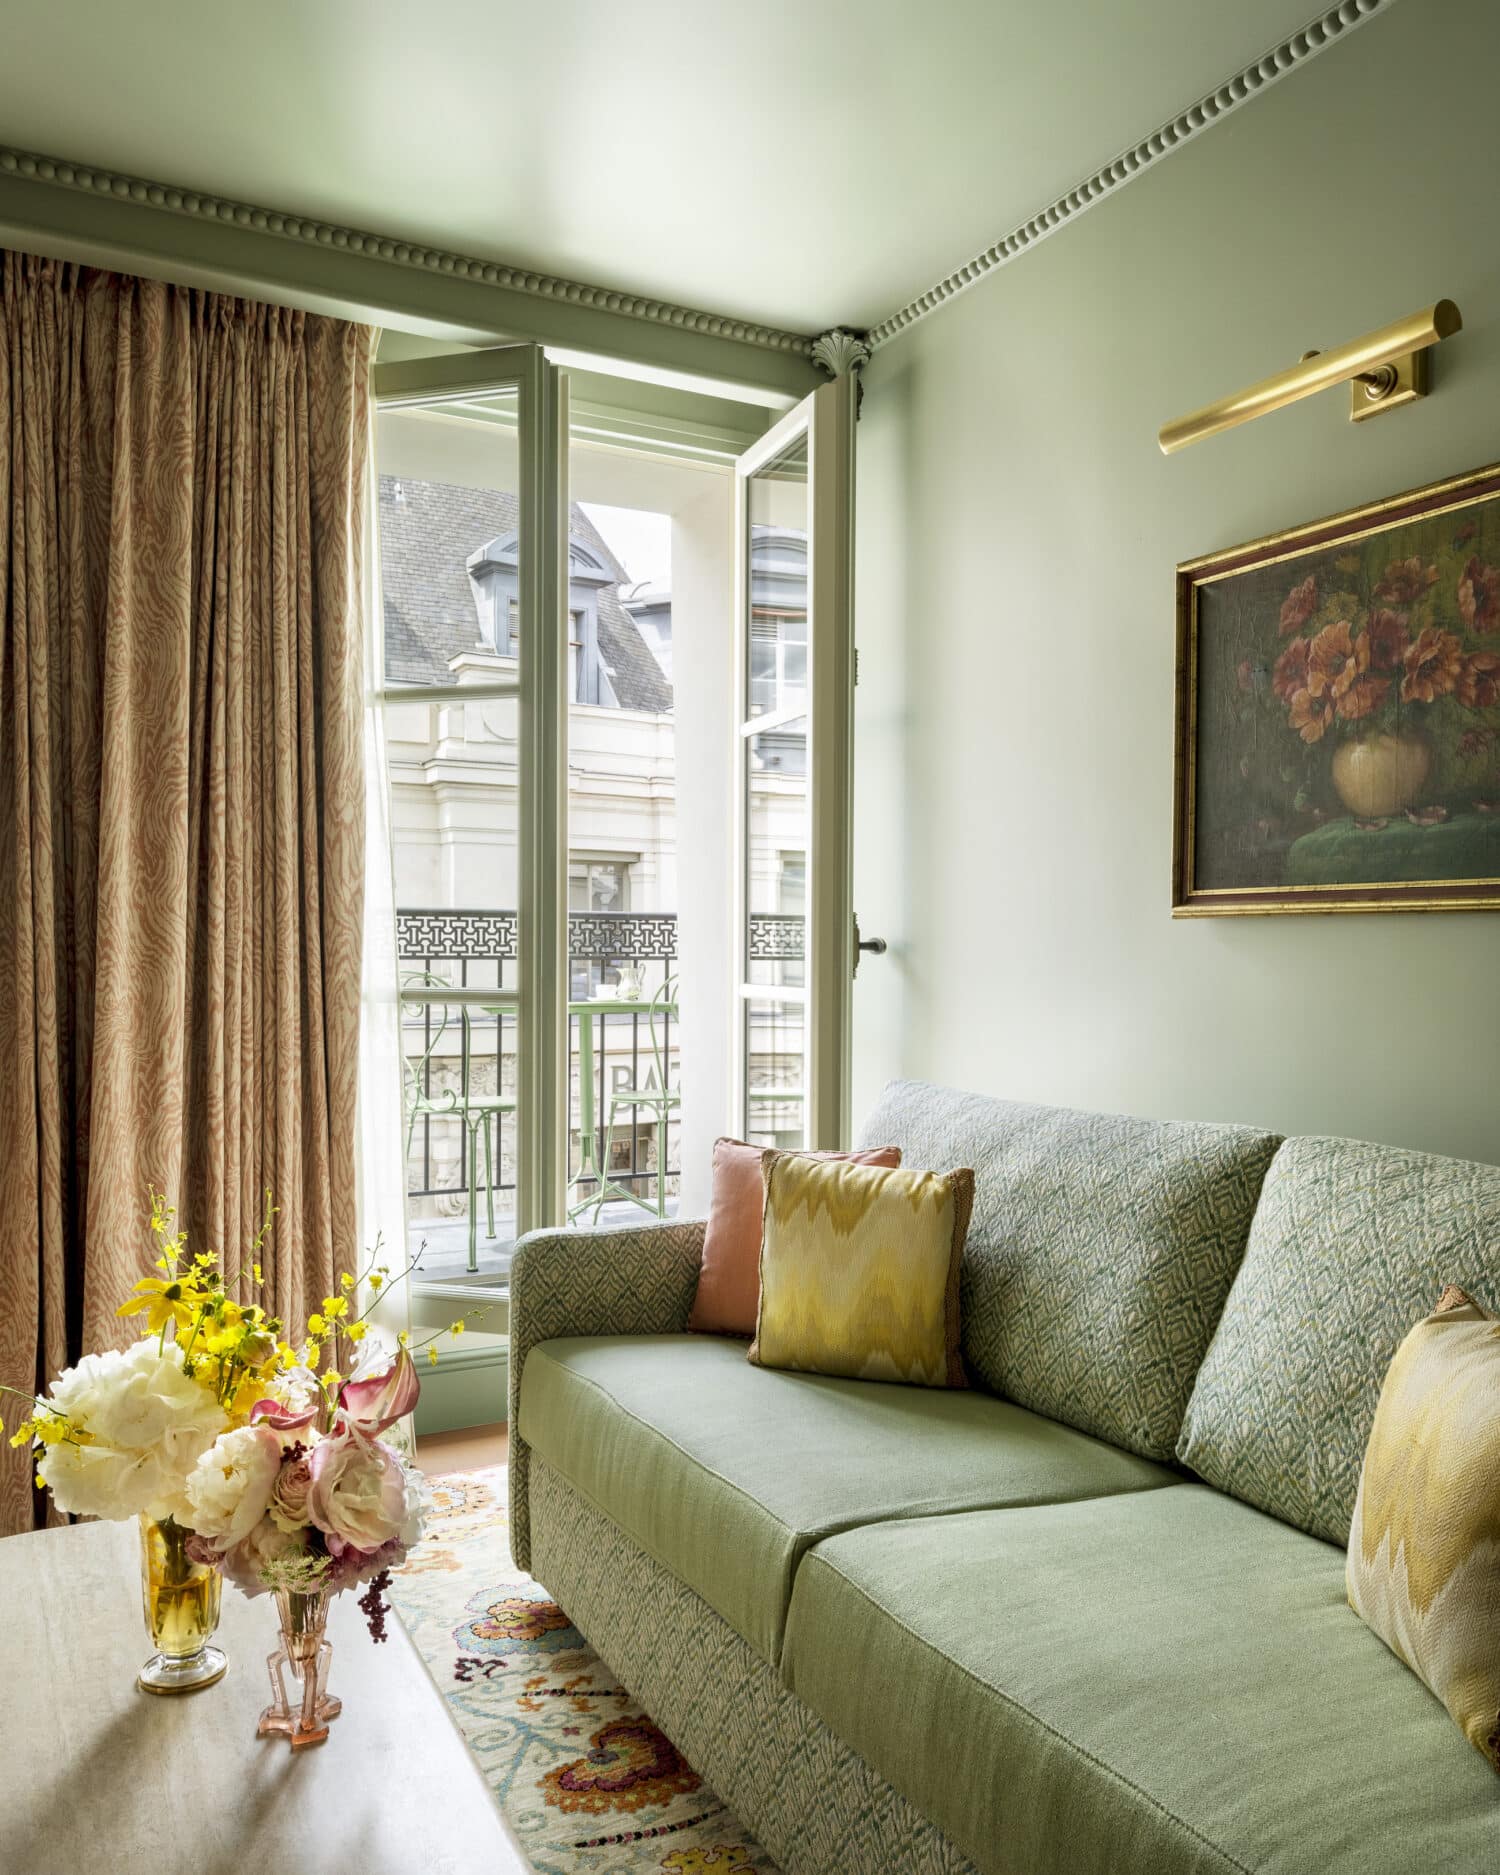 Chambre 507 Le Grand Mazarin @VincentLeroux